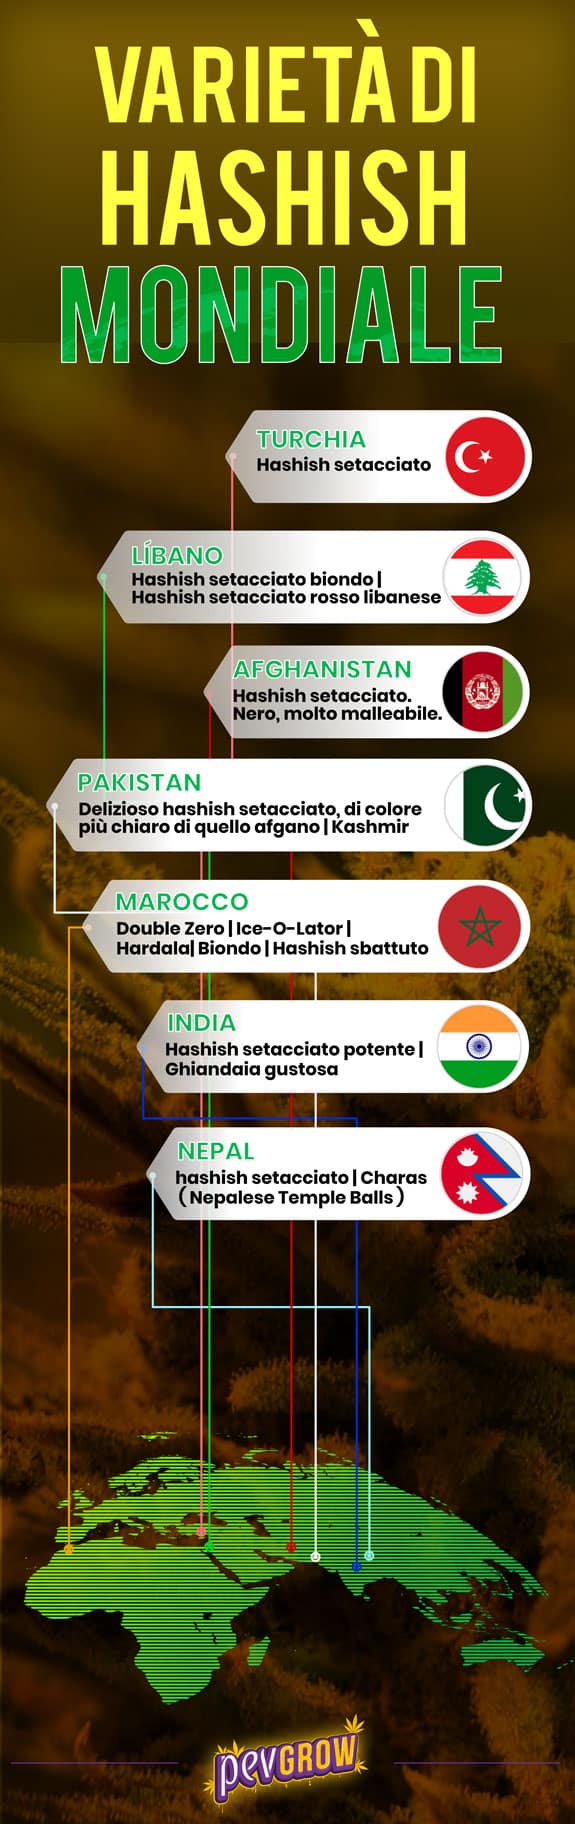 Infografica sulle varietà di hashish nel mondo.